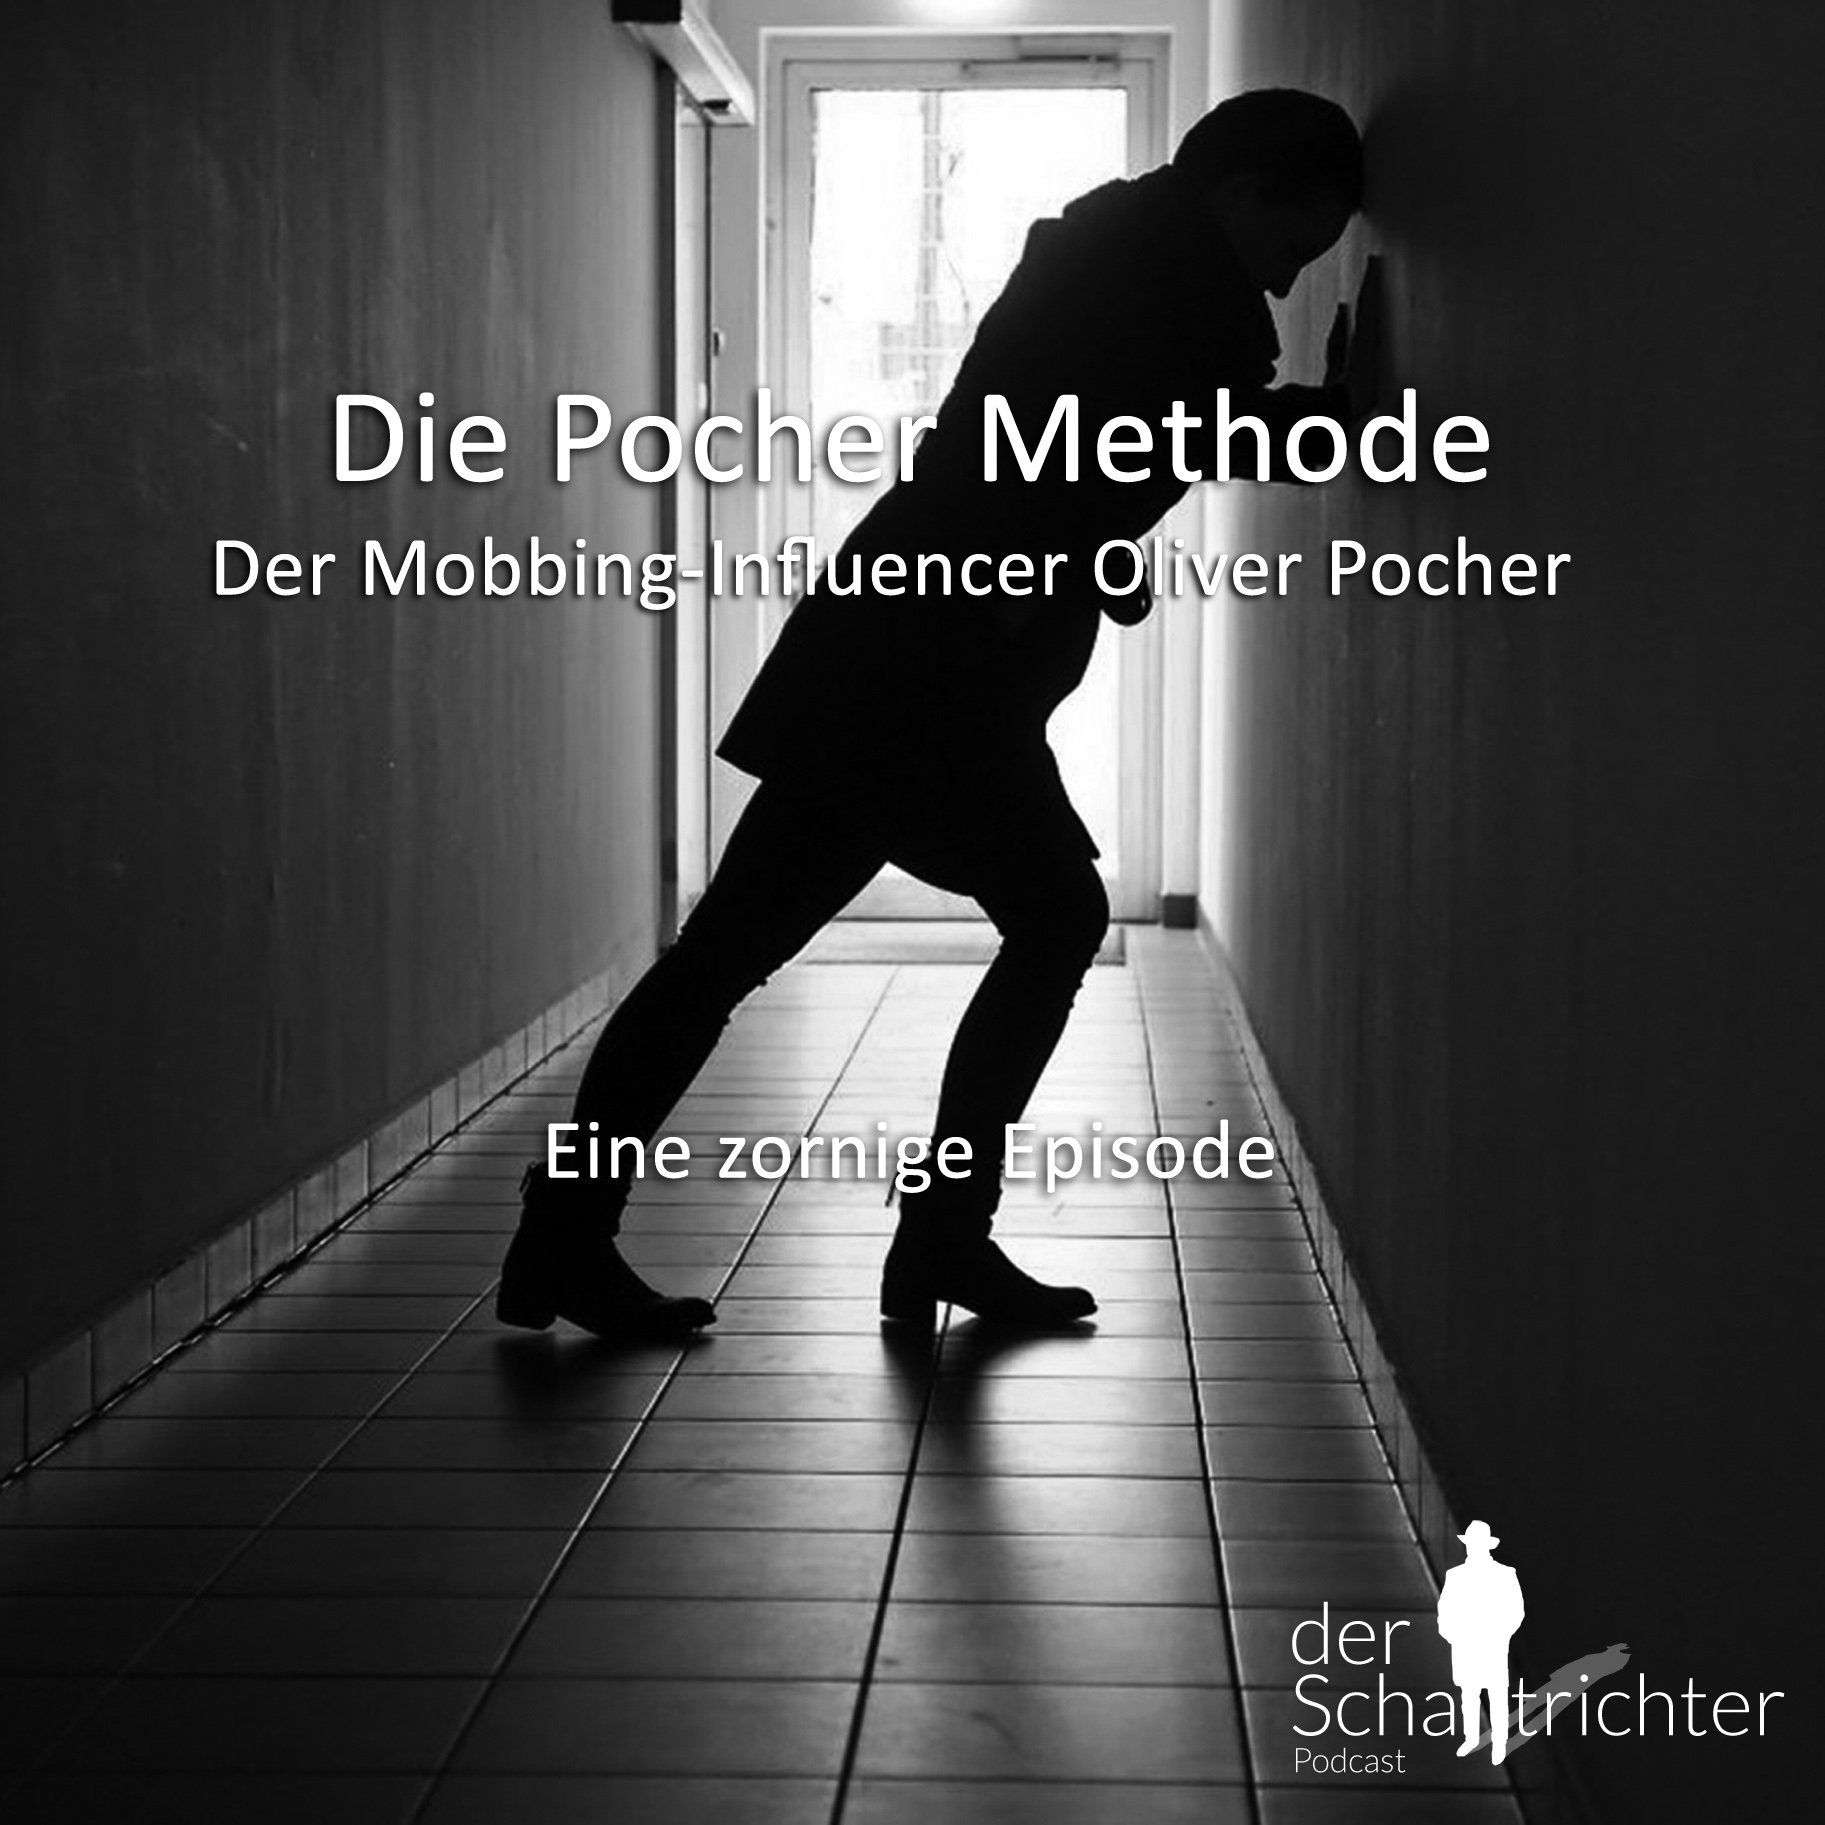 Der Mobbing-Influencer Oliver Pocher